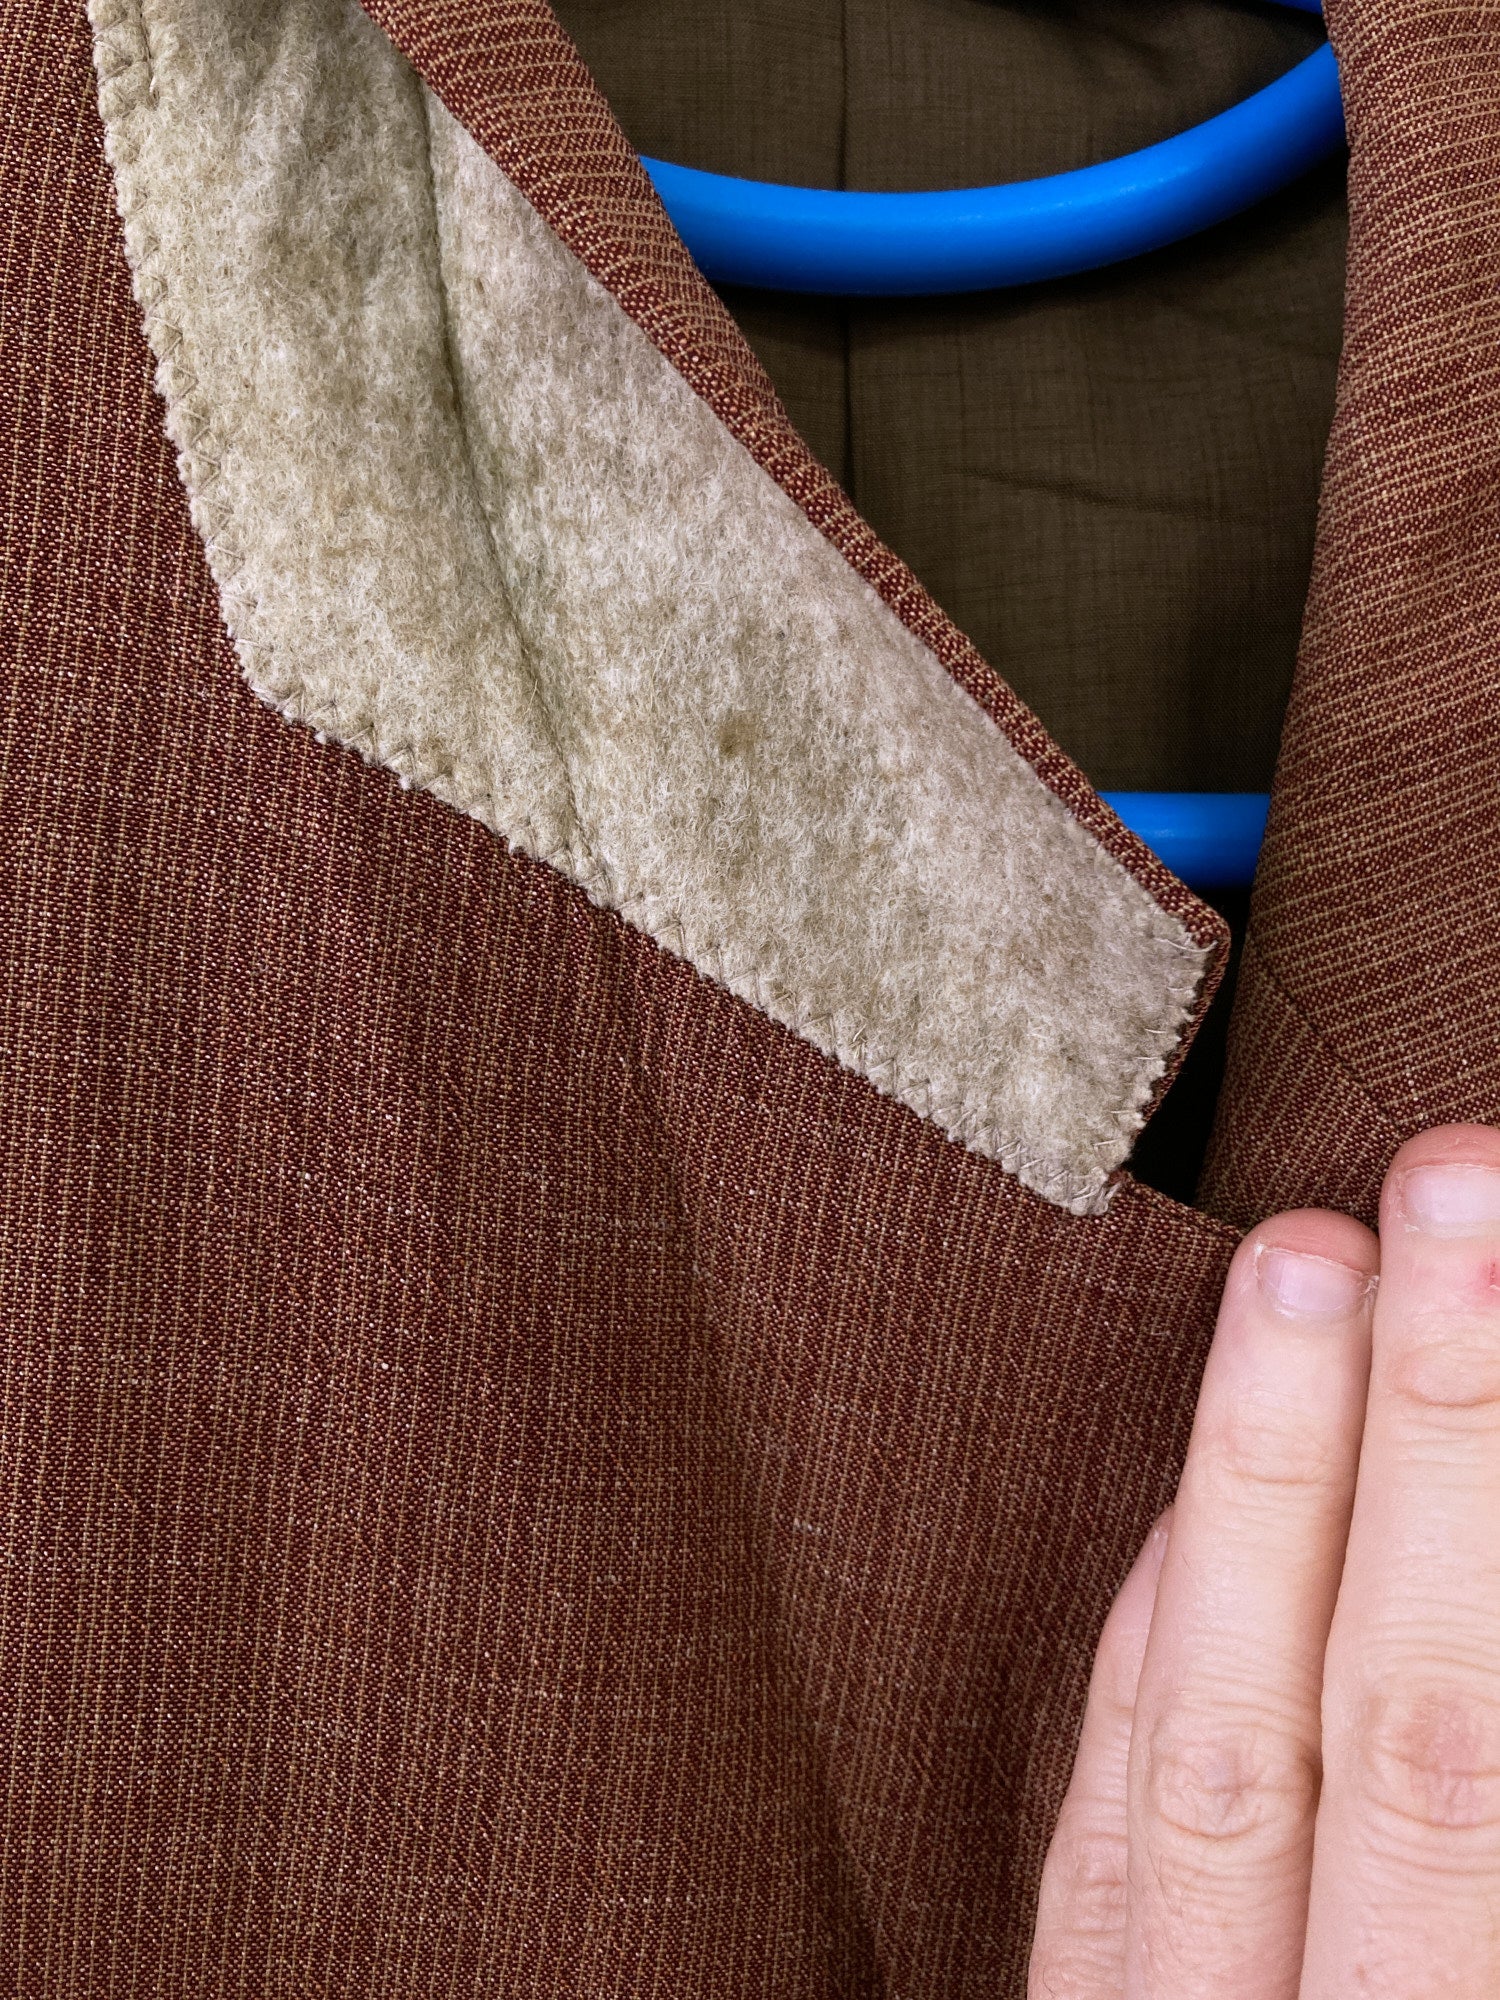 Valentino Jeans brown wool-linen check three button blazer - size 50